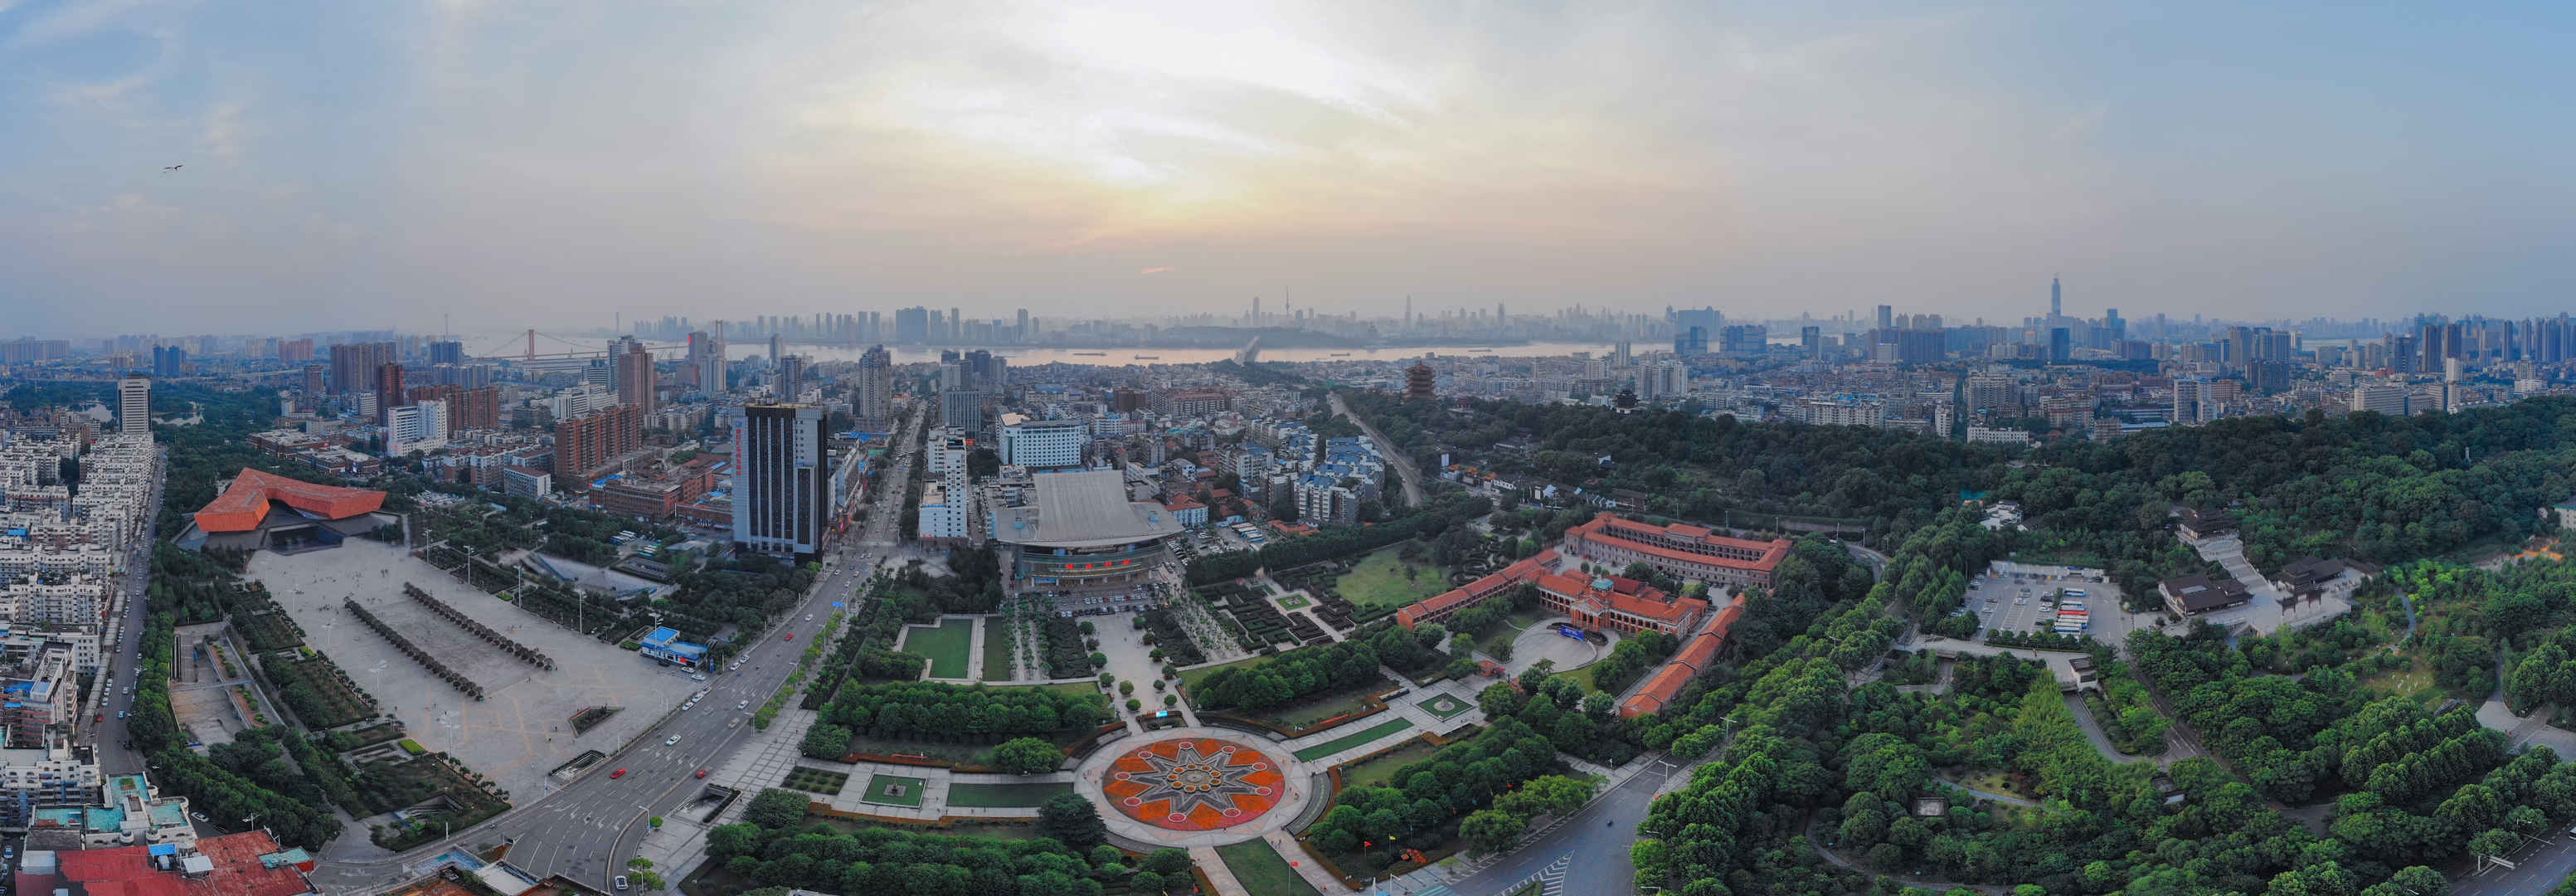 湖北武汉建筑风景图片-